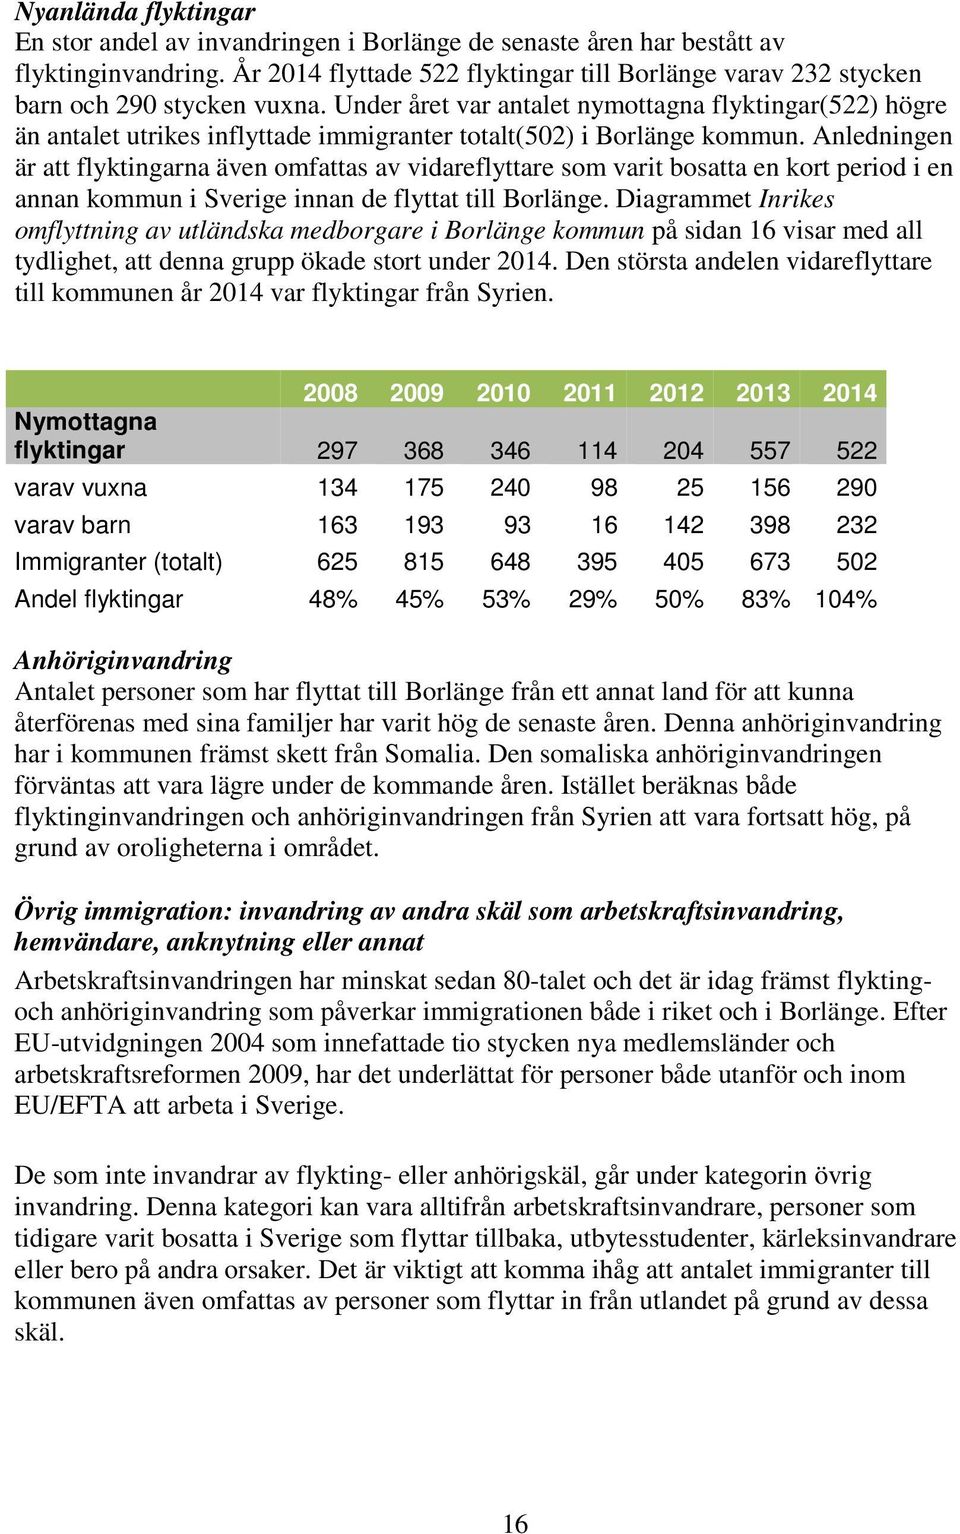 Under året var antalet nymottagna flyktingar(522) högre än antalet utrikes inflyttade immigranter totalt(502) i Borlänge kommun.